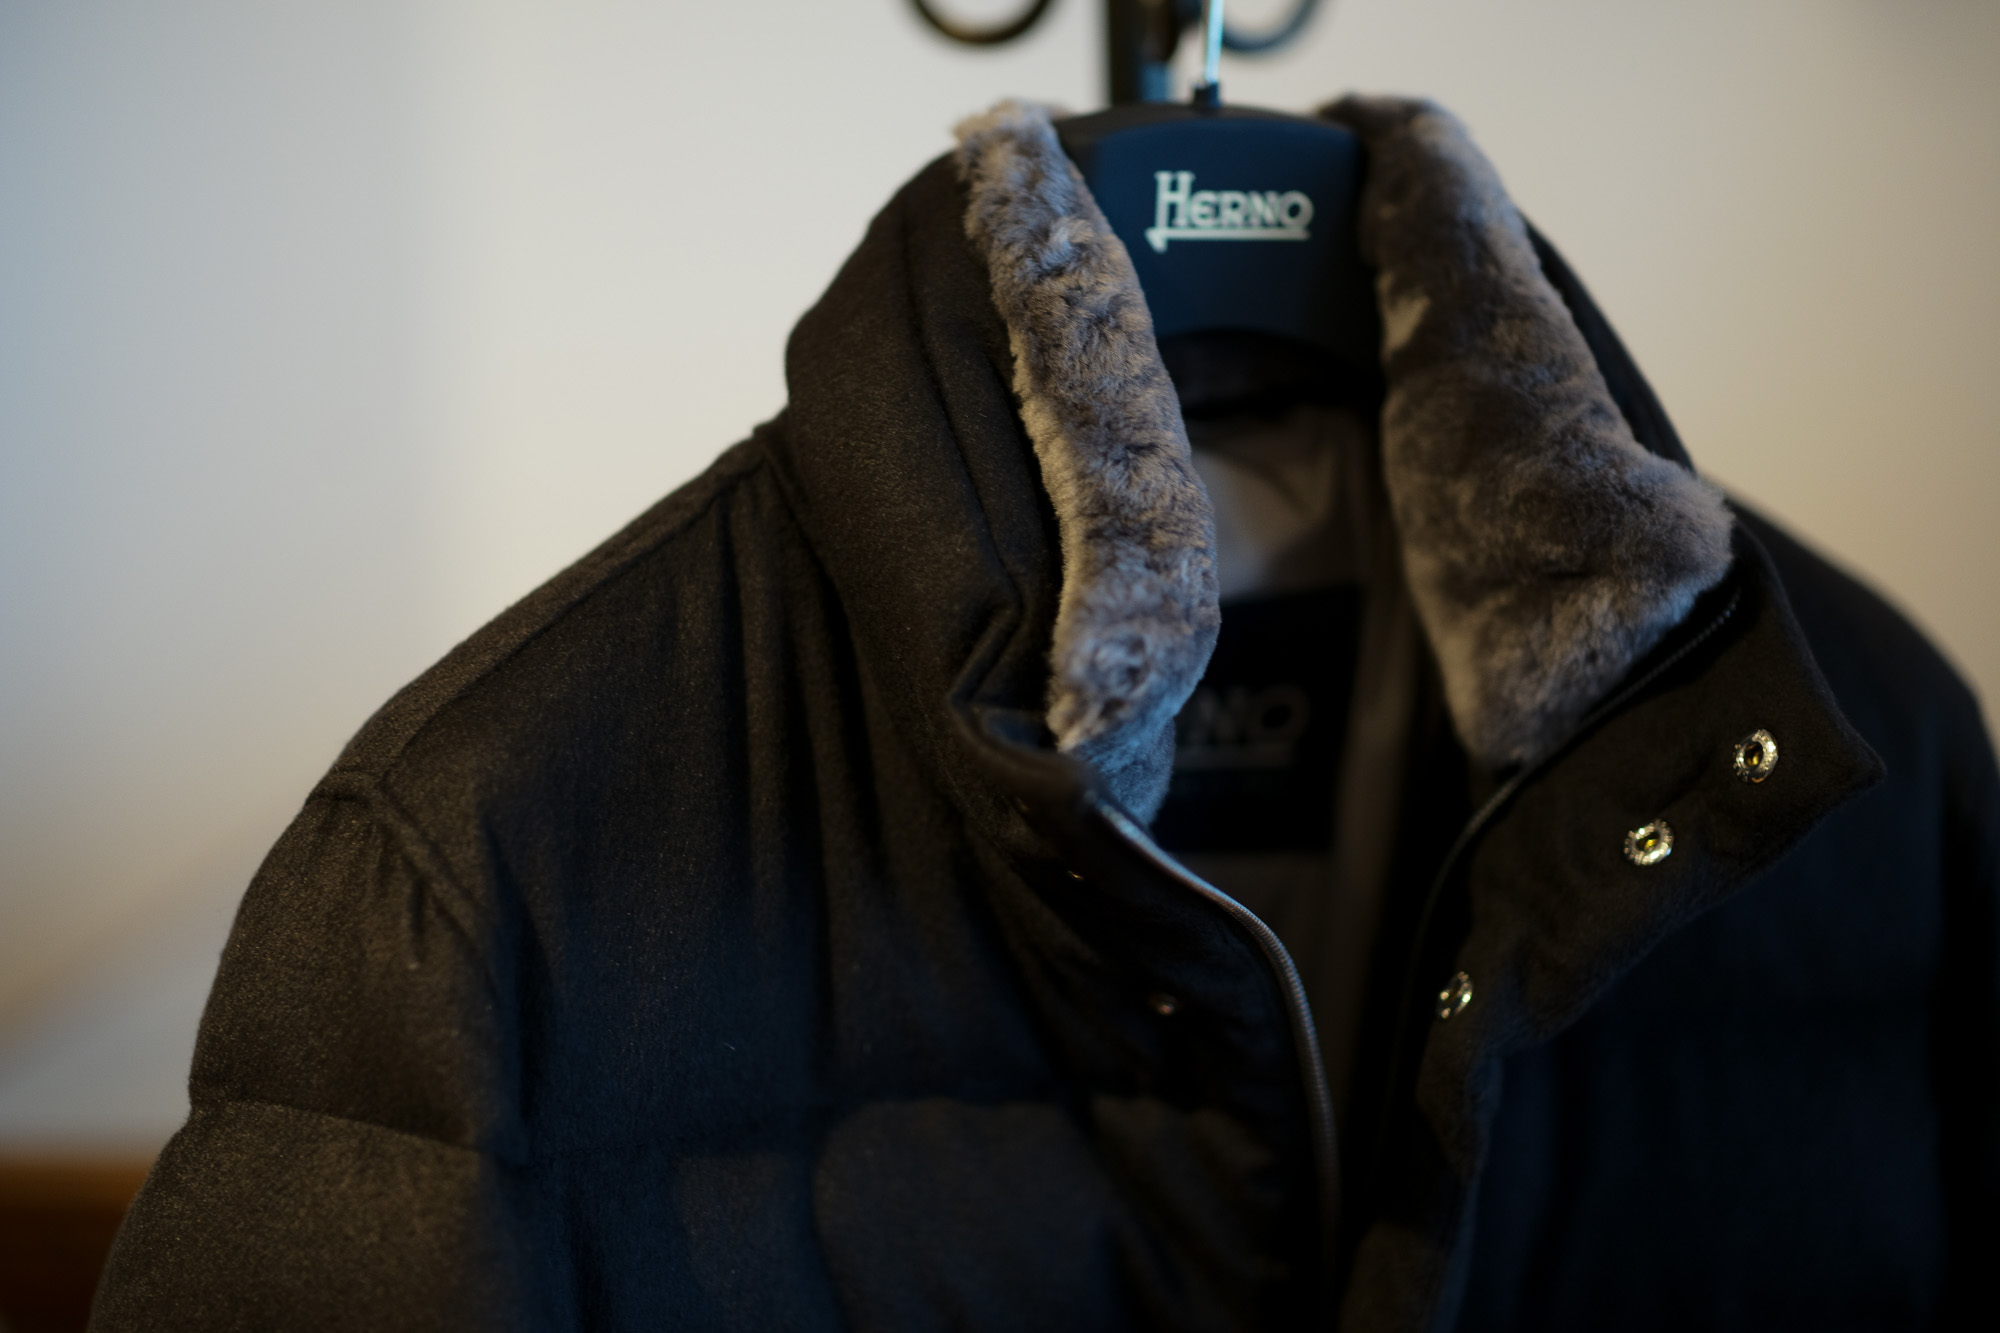 HERNO(ヘルノ) PI0584U Silk Cashmere Down coat (シルク カシミア ダウン コート) PIACENZA (ピアツェンツァ) DROP GLIDE NYLON ULTRALIGHT 撥水 シルク カシミア ダウン コート BLACK (ブラック・9300) Made in italy (イタリア製) 2019 秋冬新作 alto e dirittoアルトエデリット 42,44,46,48,50,52